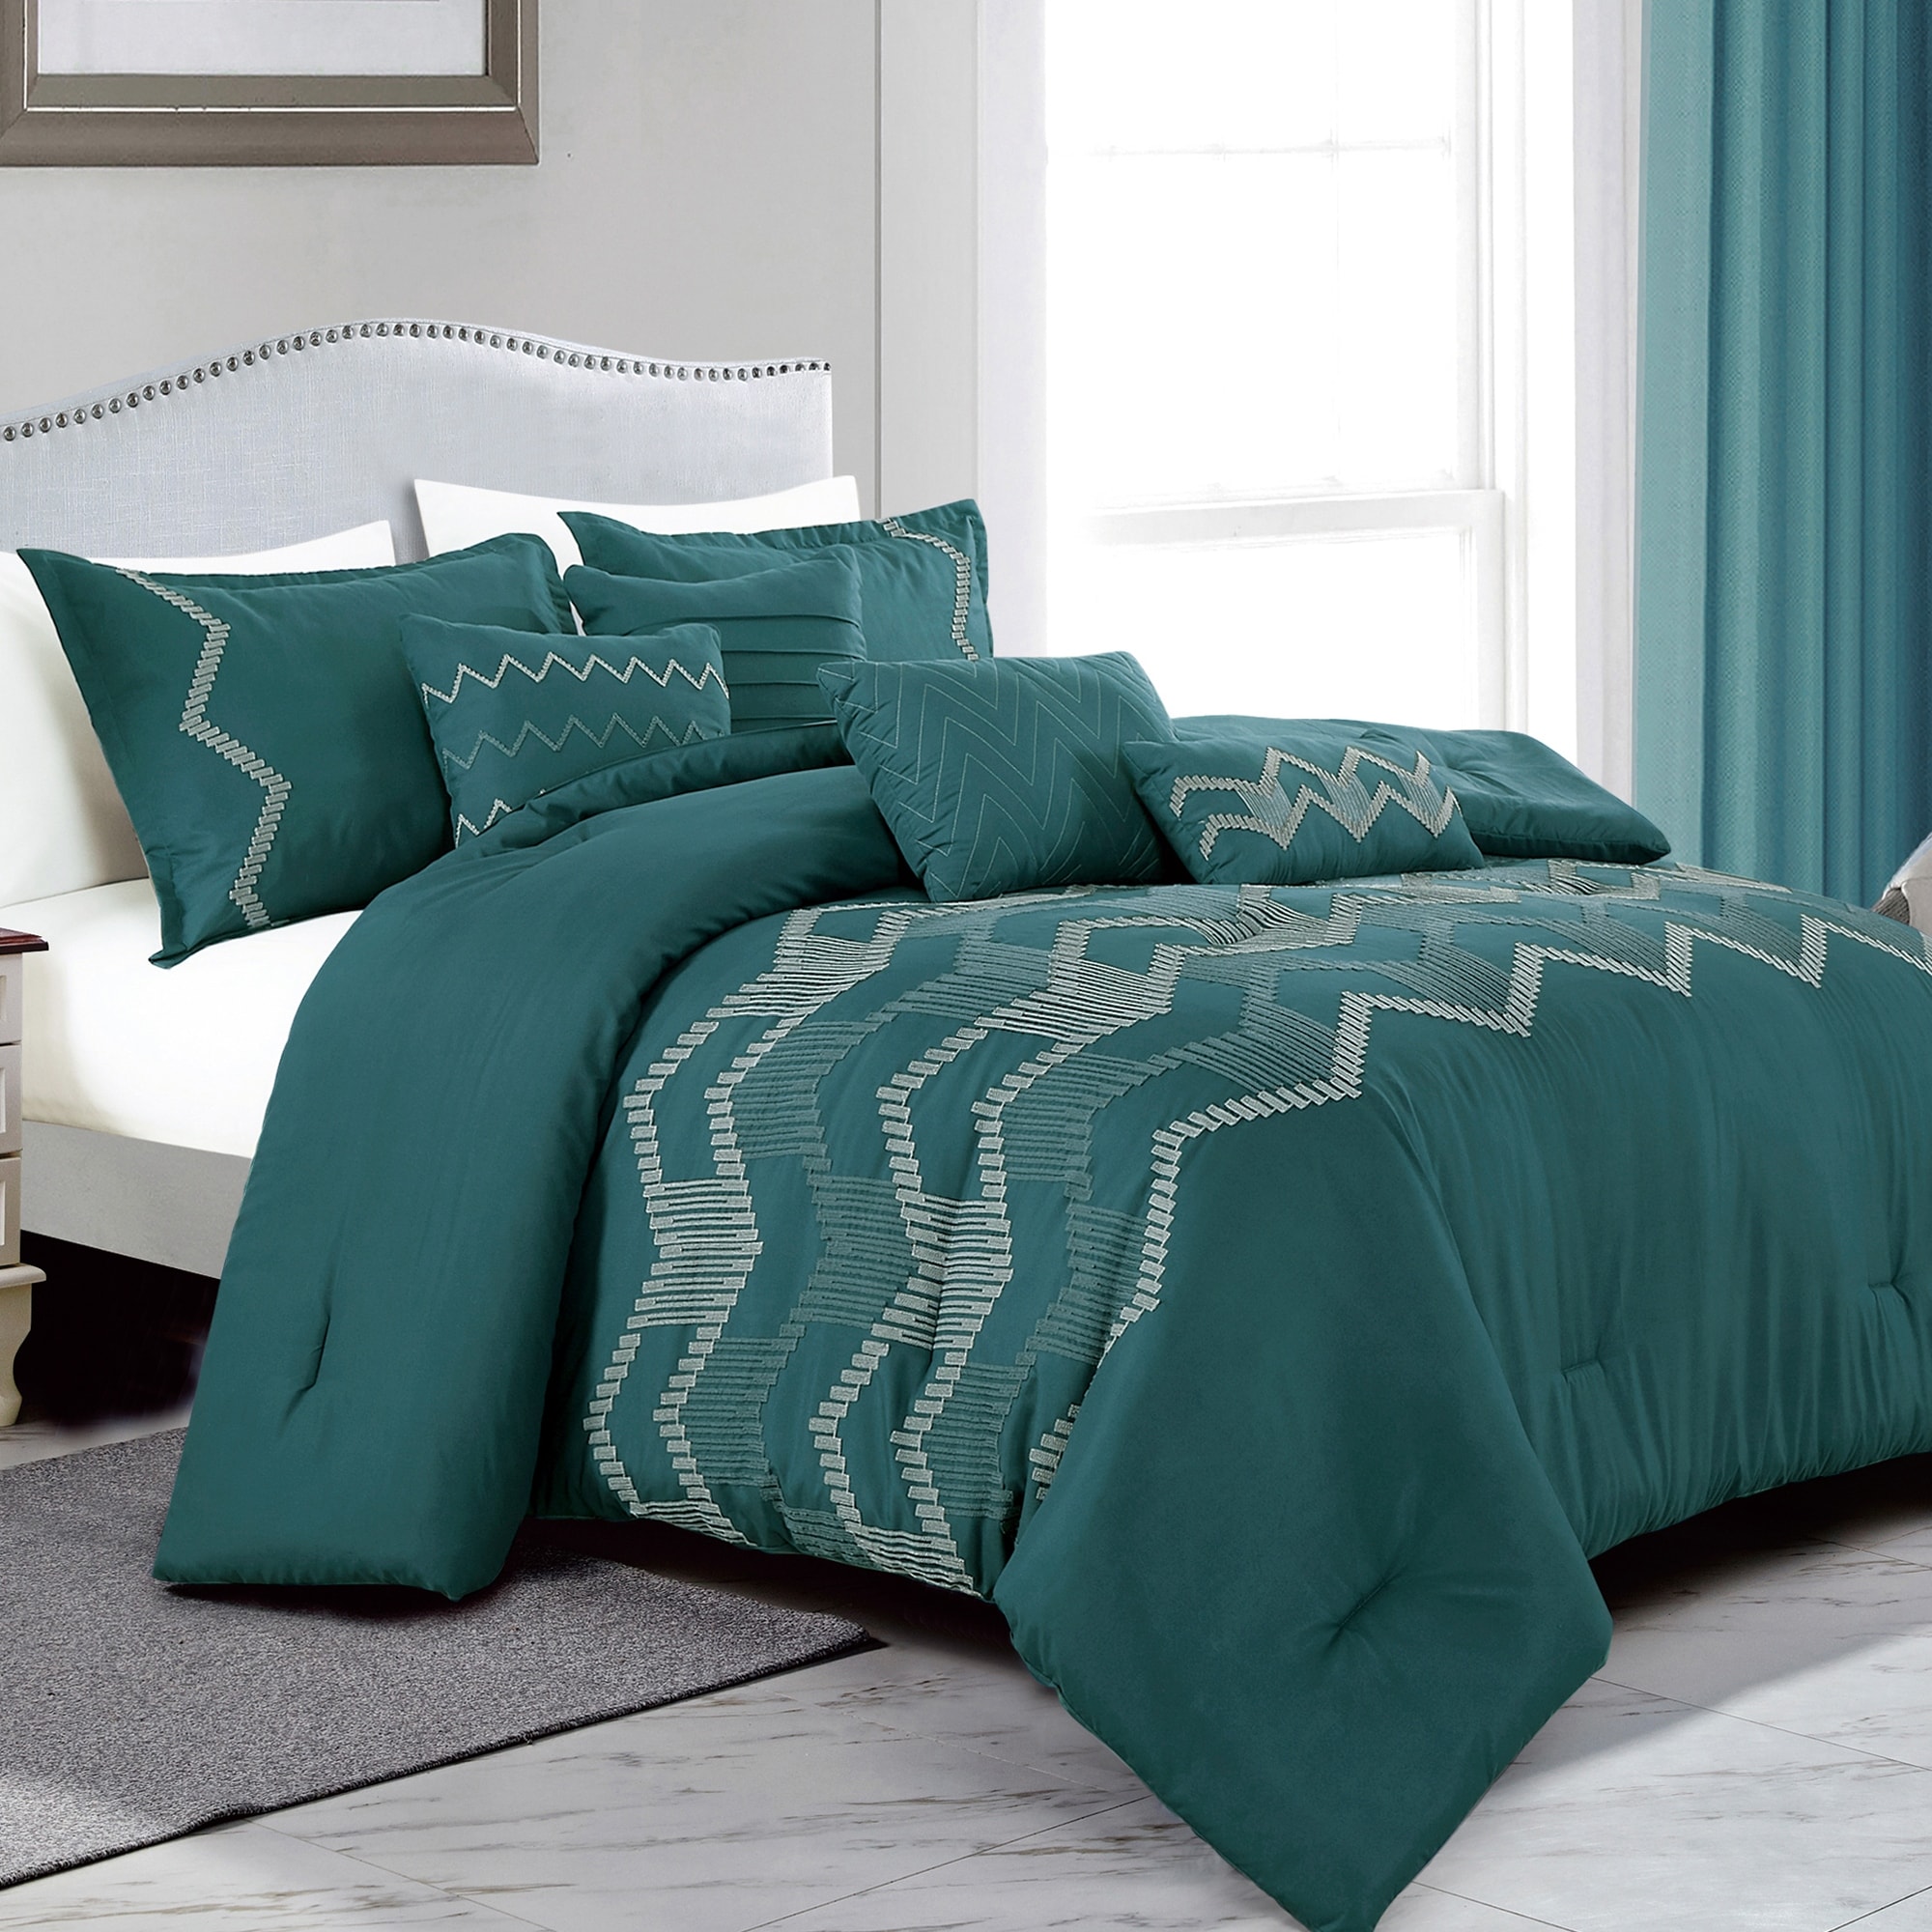 Shatex 7 Piece Queen Luxury Dark Gray Microfiber Oversized Bedroom Comforter Sets